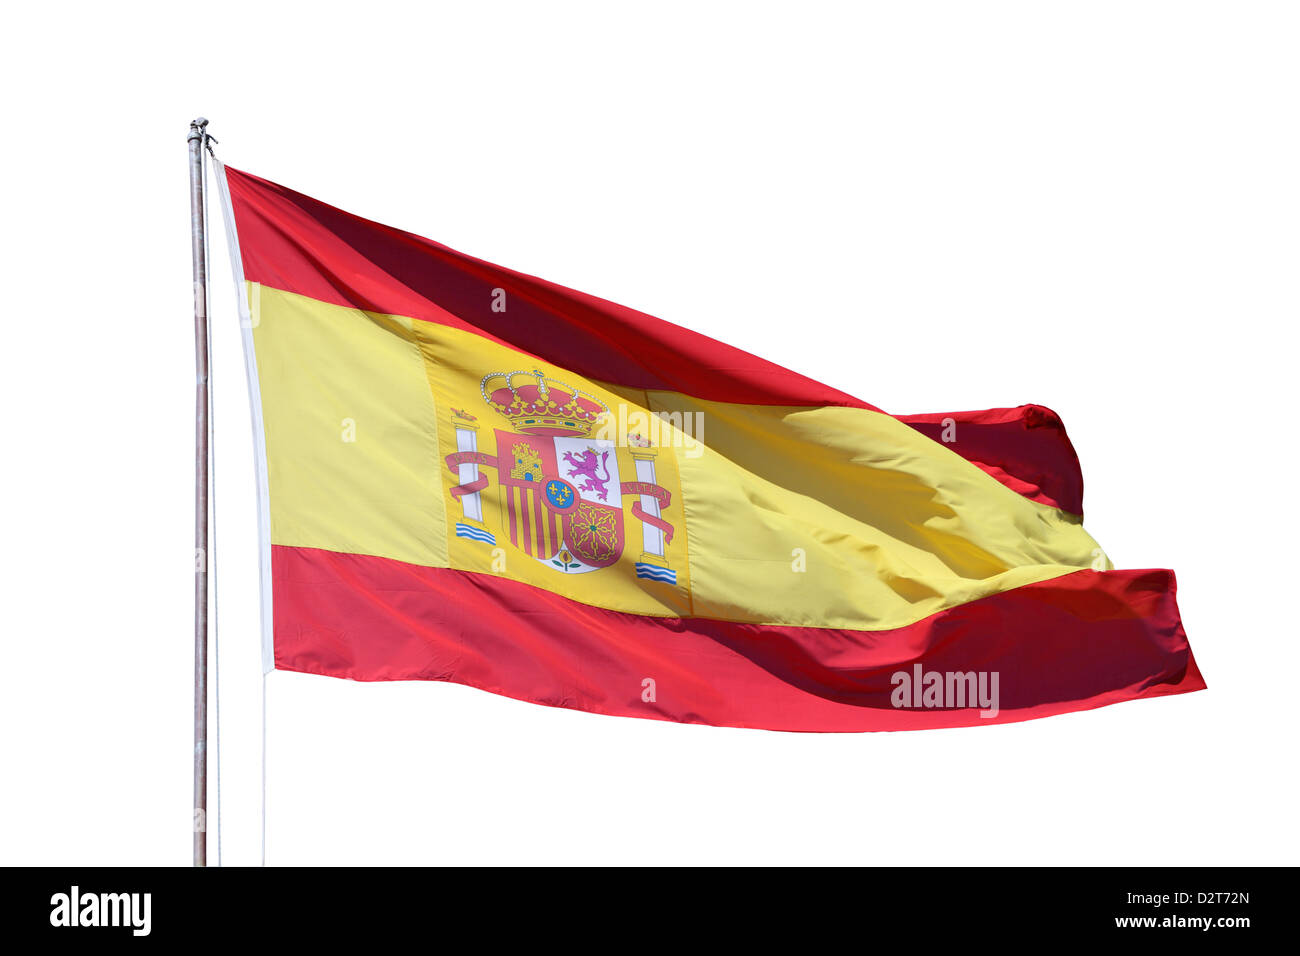 Bandera nacional española isoliert sobre fondo blanco. Foto de stock